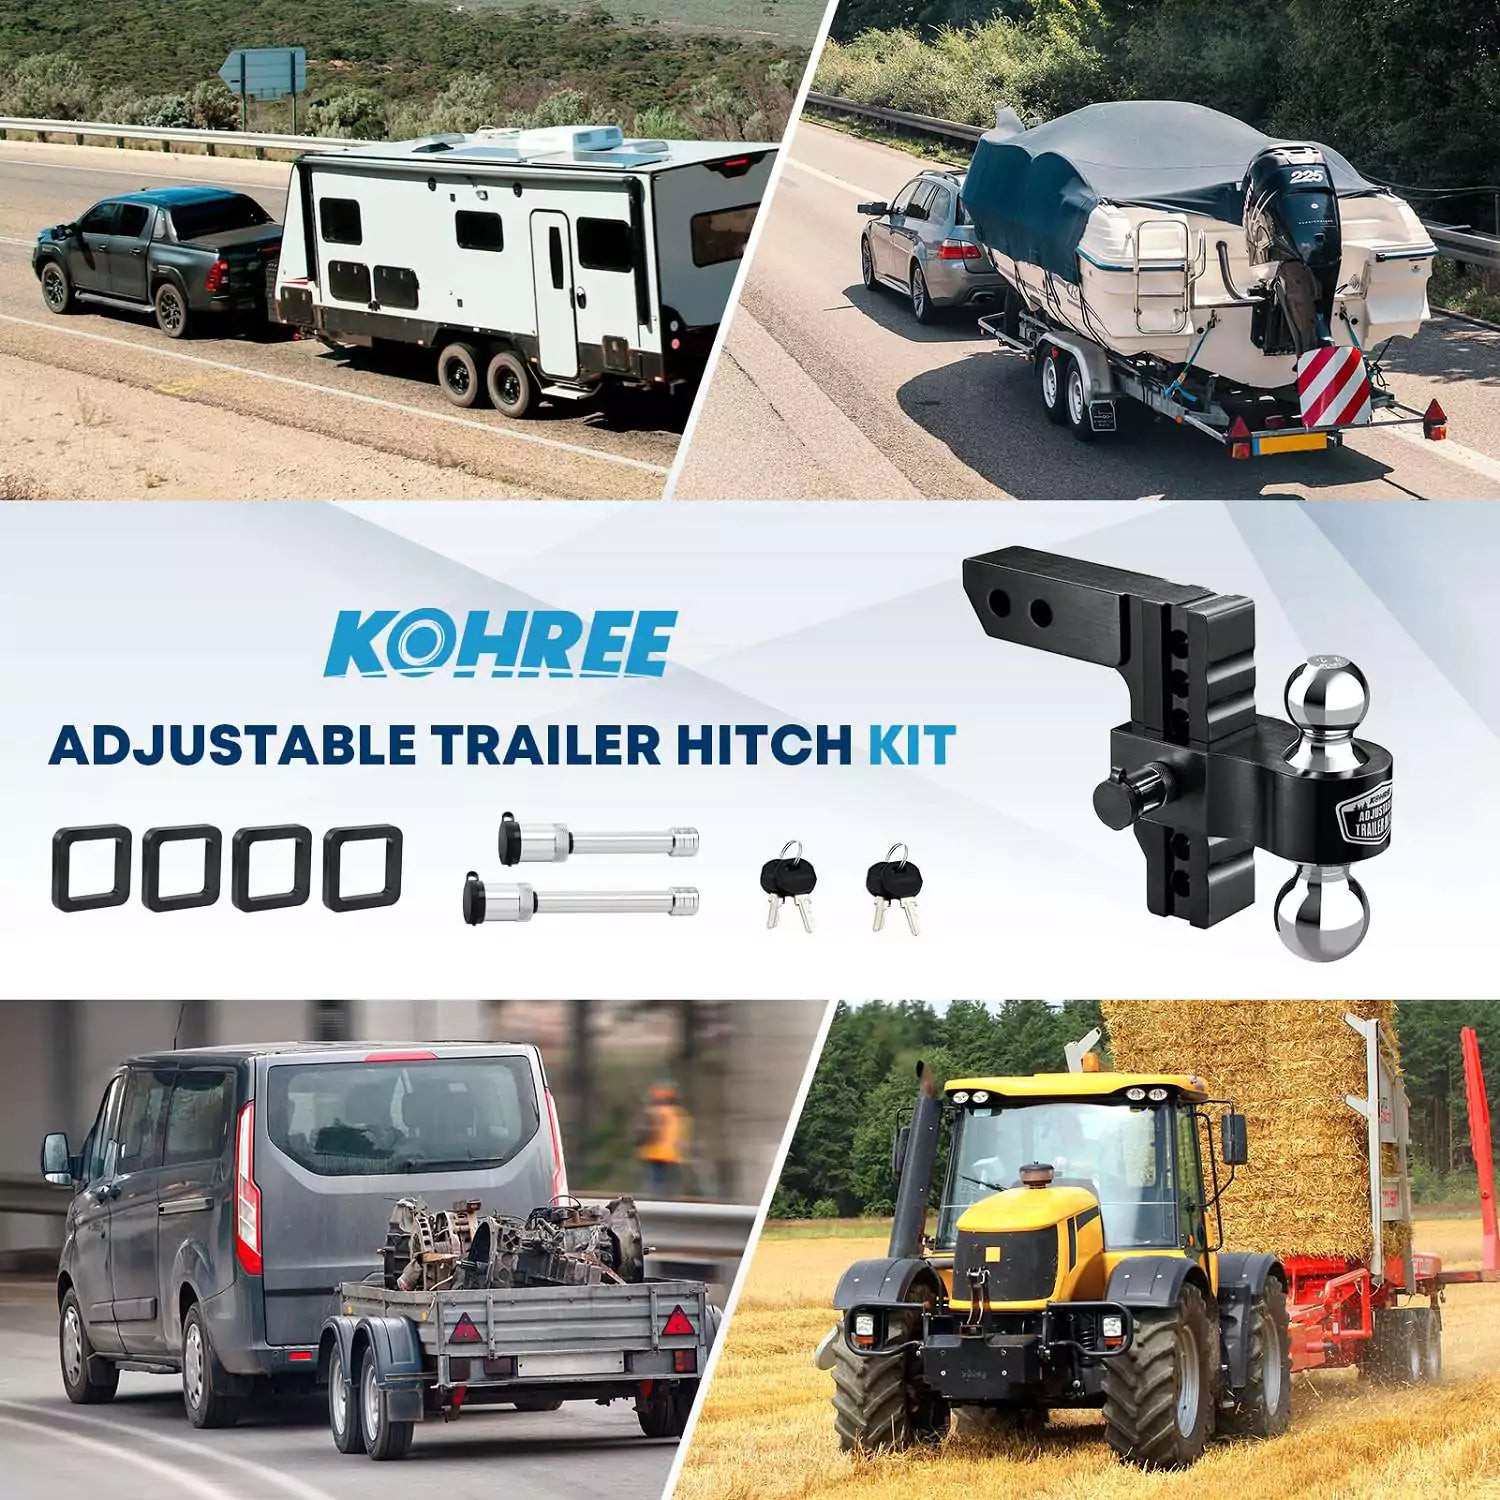 Kohree adjustable trailer hitch kit